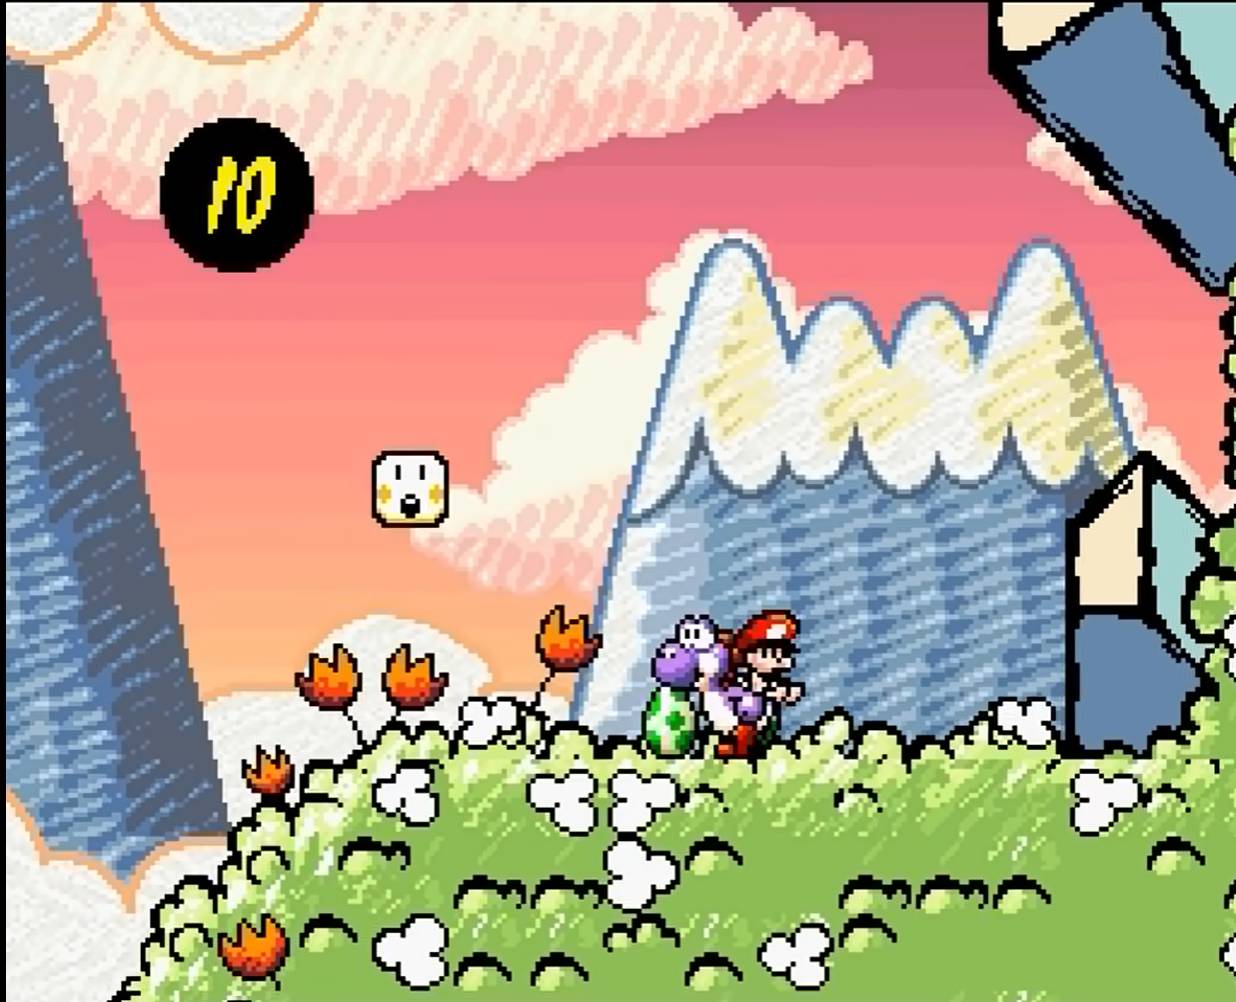 Top 10: Jogos do Mario em flash mais inusitados